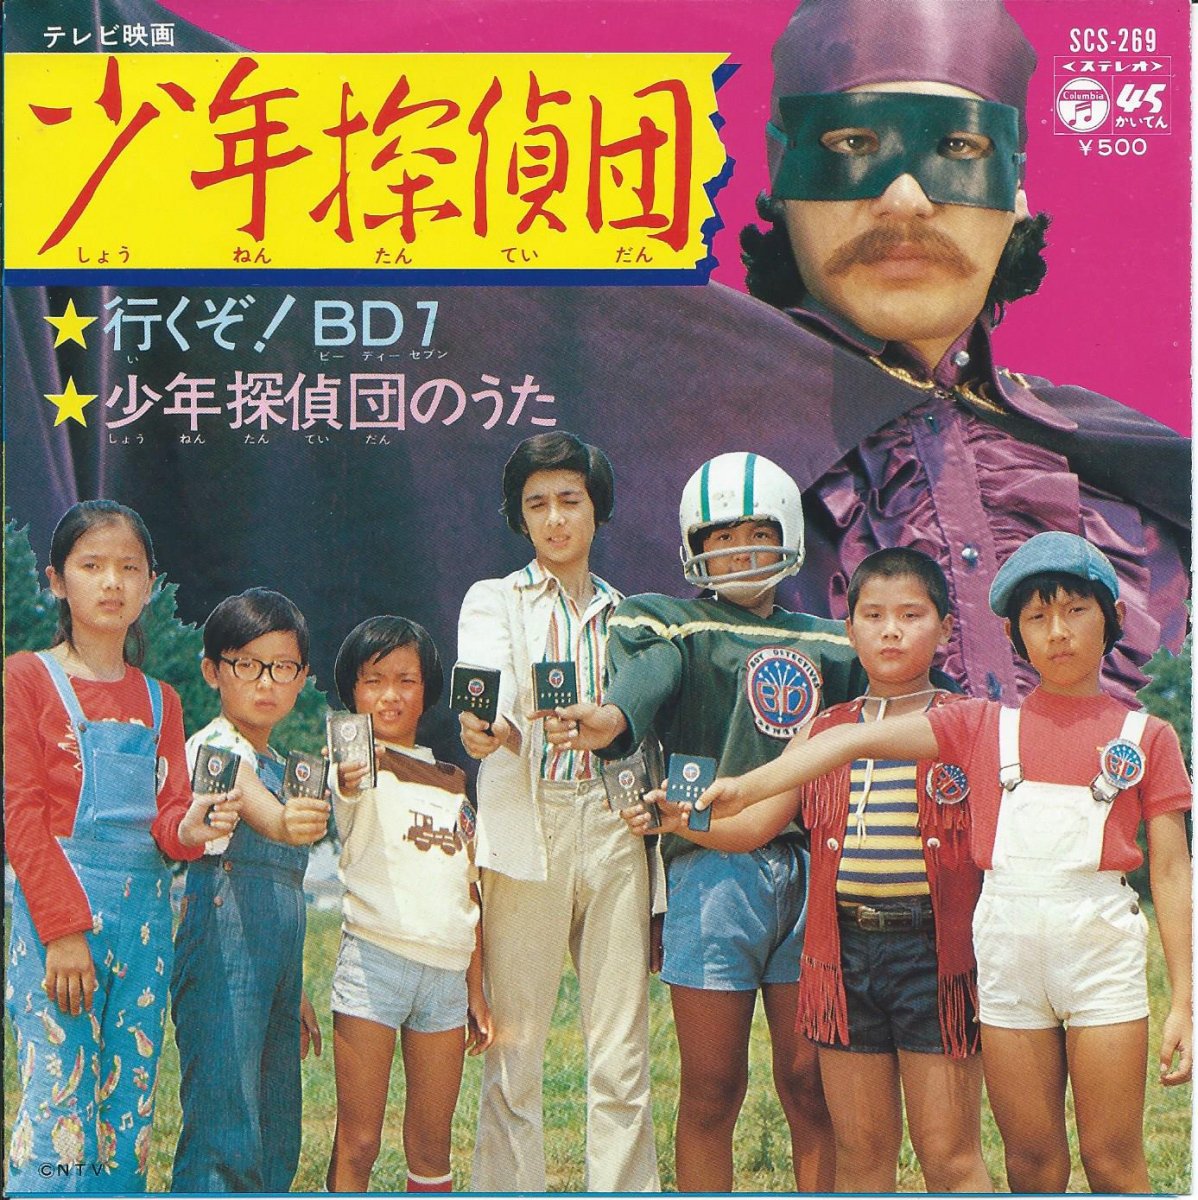 水木一郎 Ichiro Mizuki 行くぞ 7 少年探偵団のうた 7 Hip Tank Records